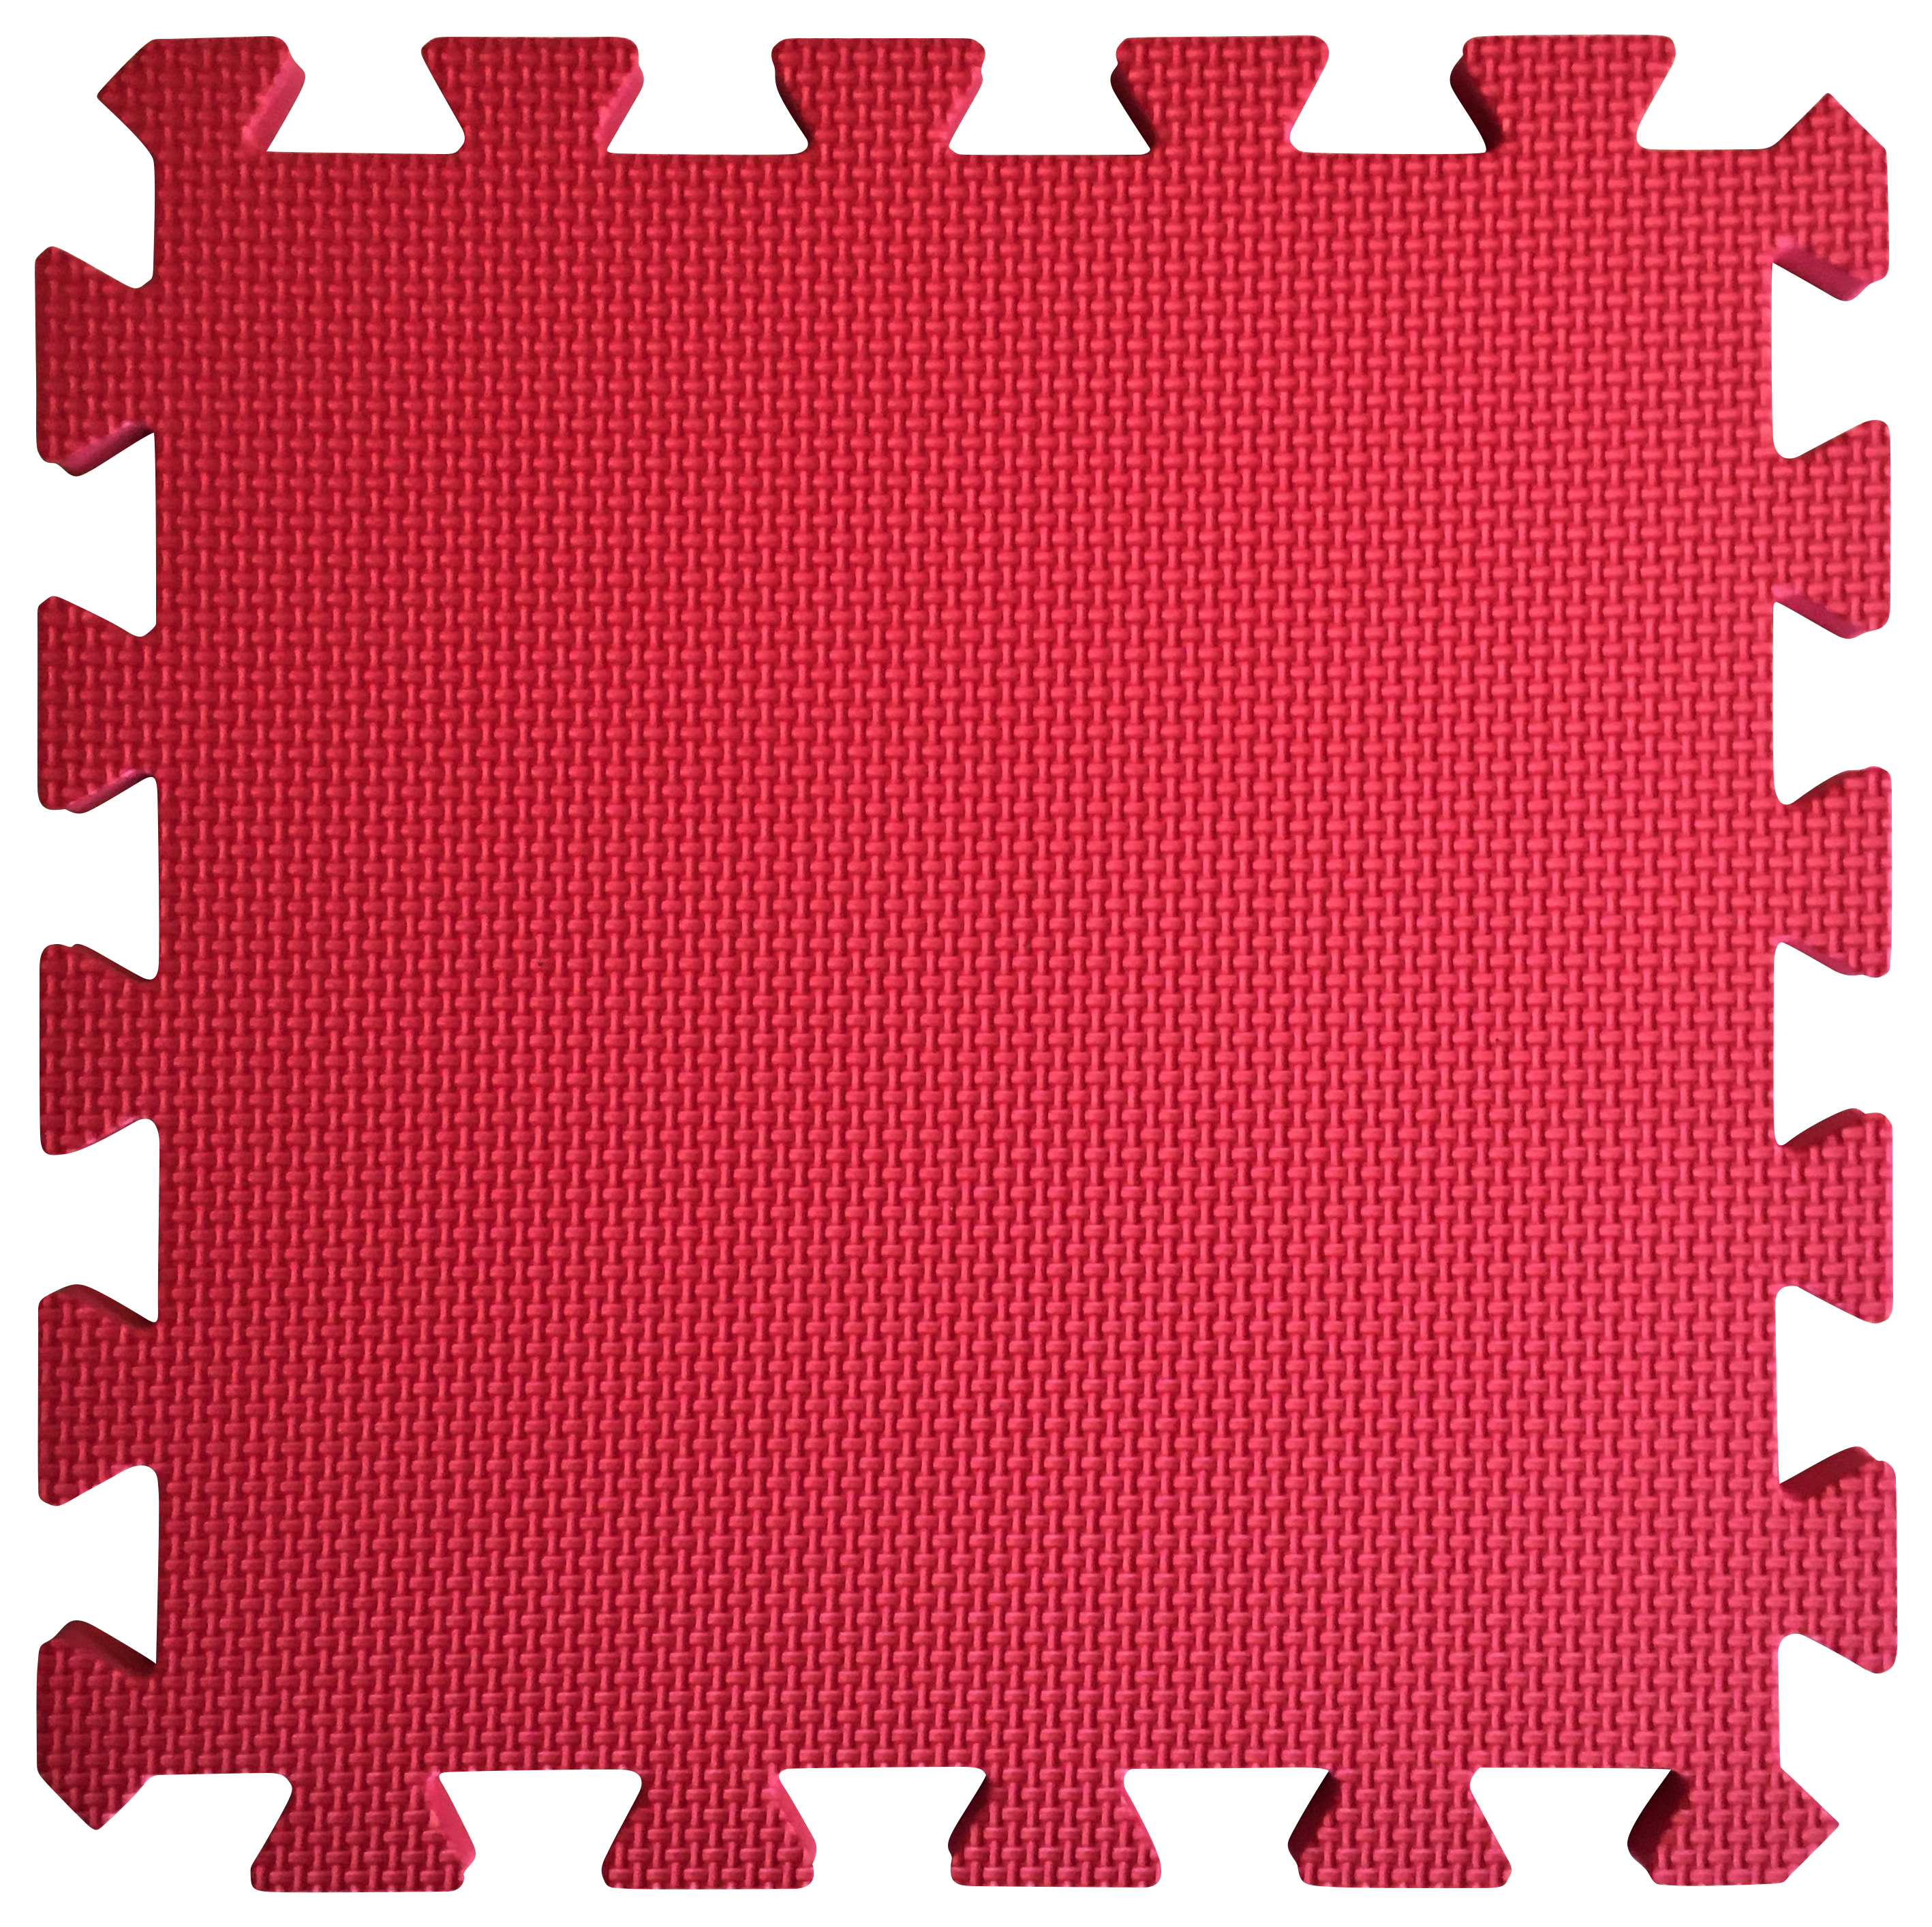 Image of Warm Floor Red Interlocking Floor Tiles for Garden Buildings - 9 x 10ft